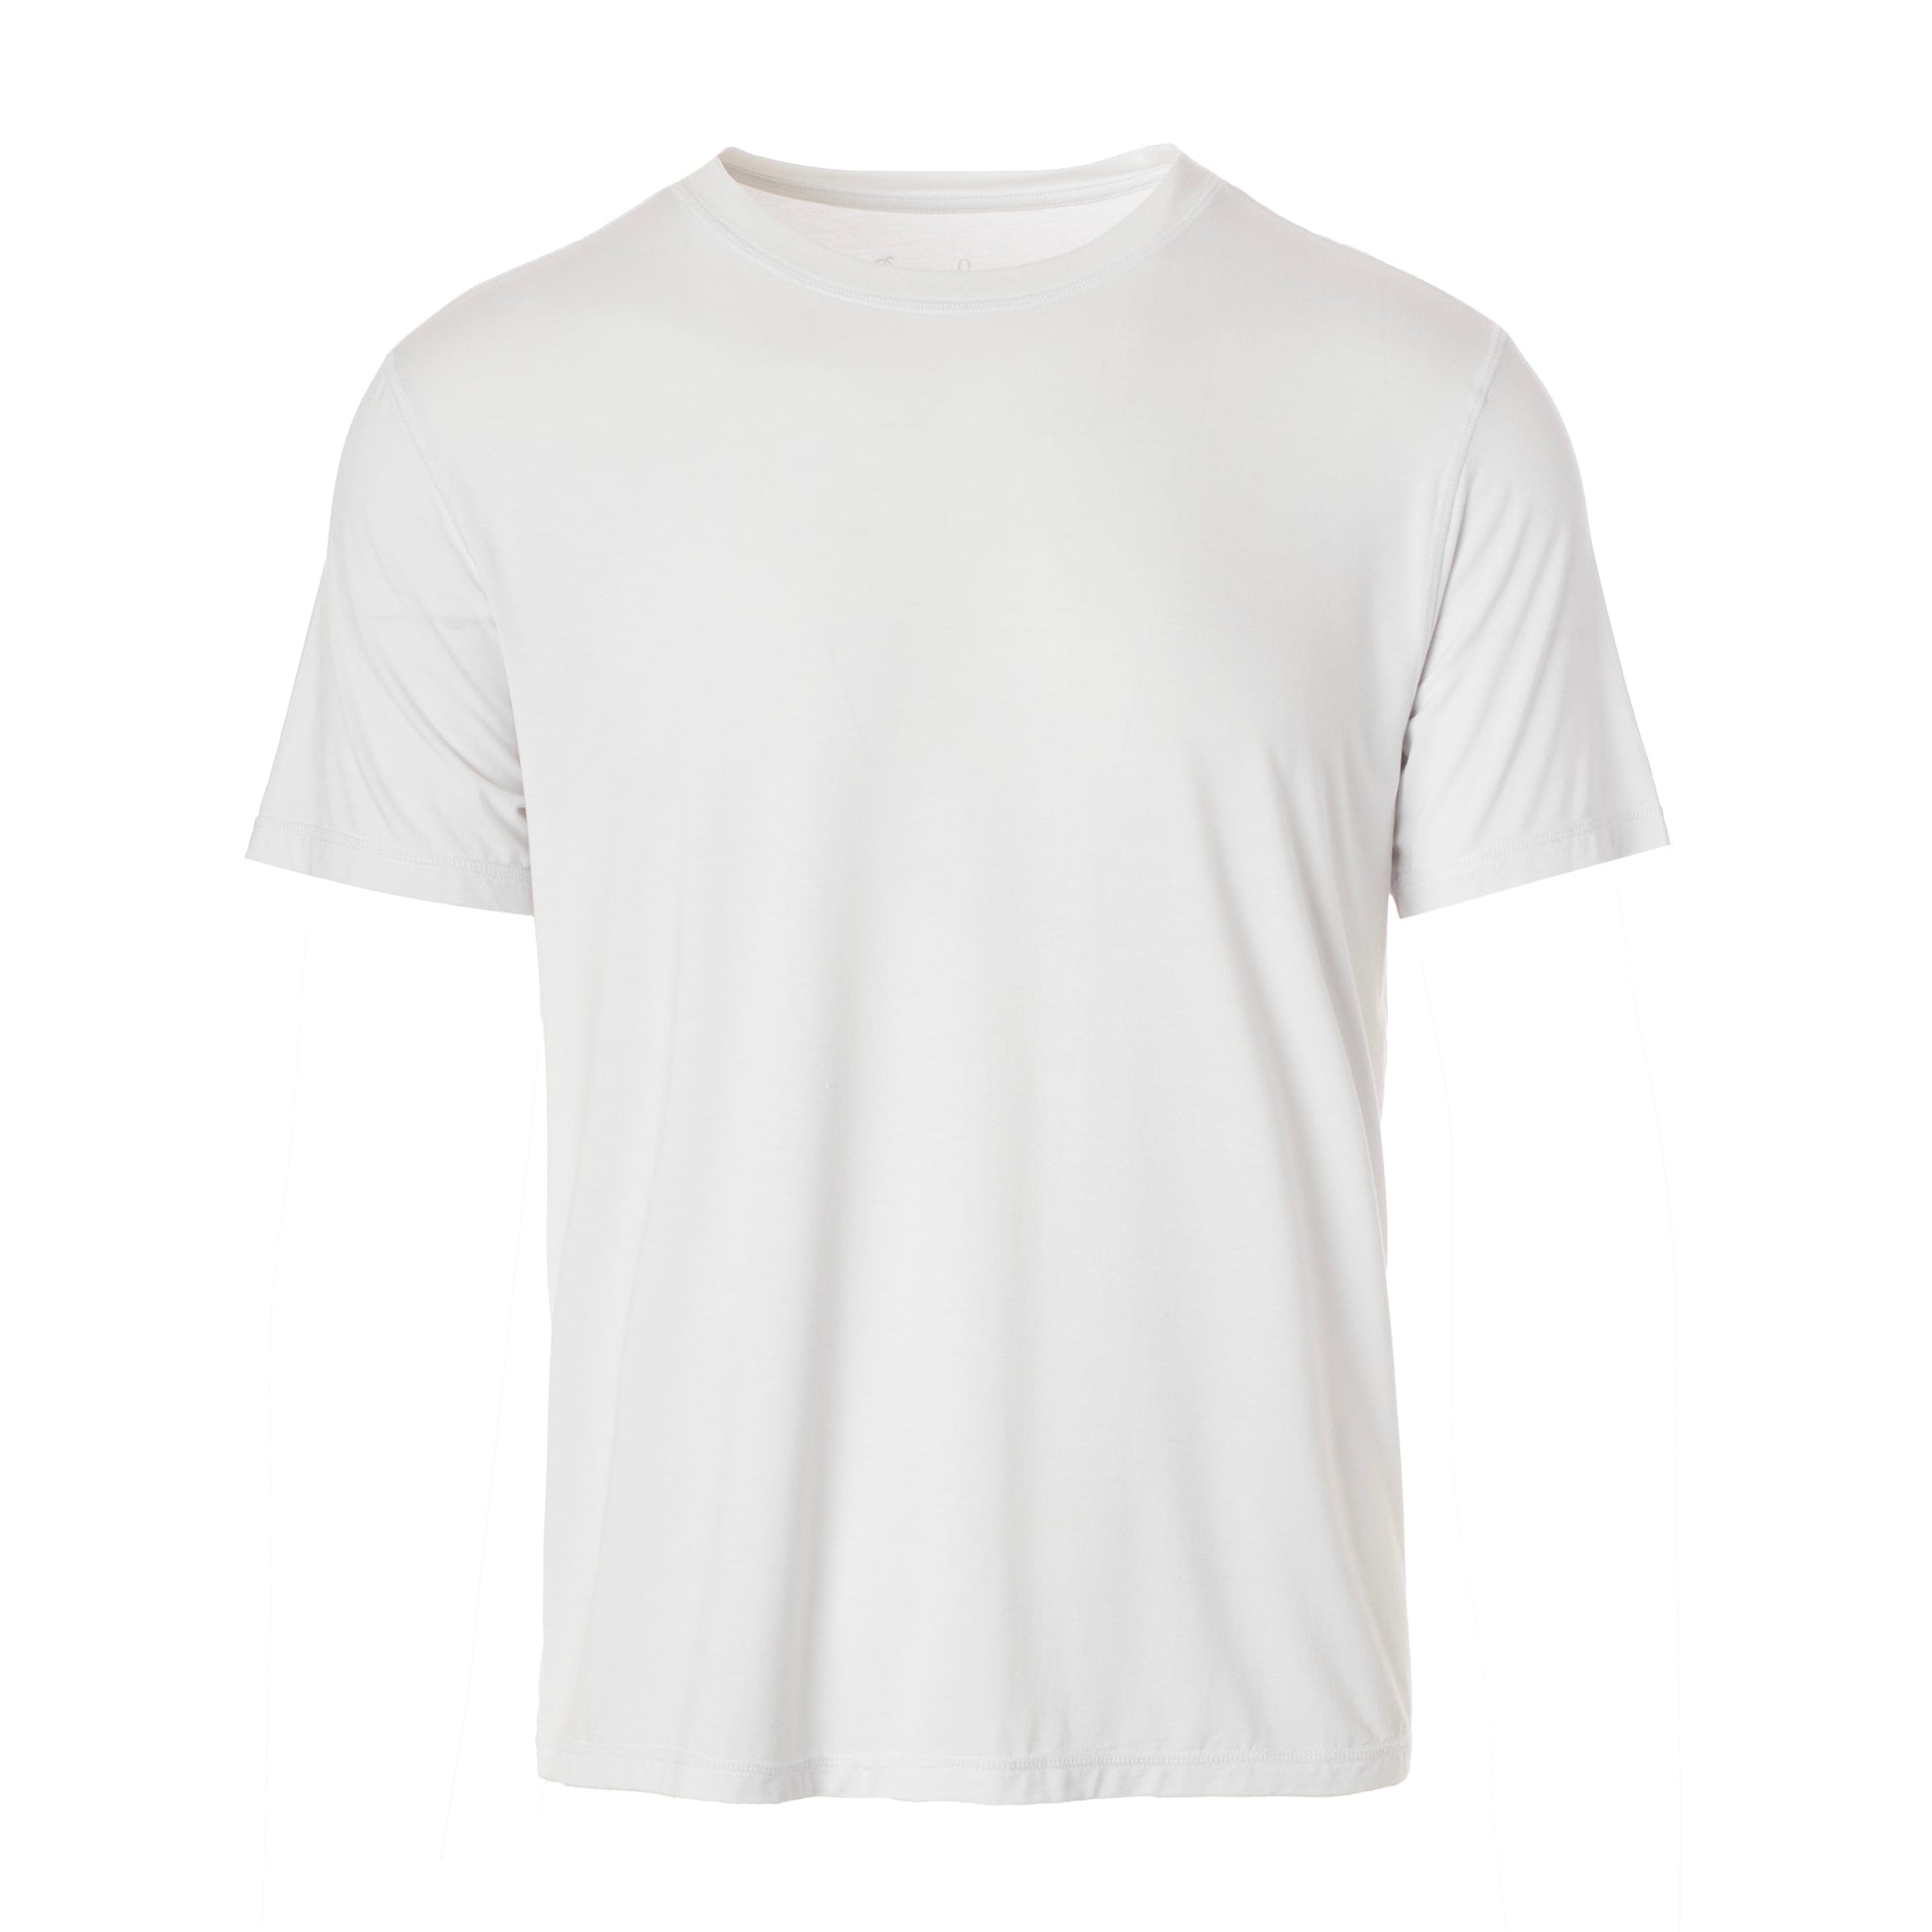 white tee shirt bamboo men's tshirt